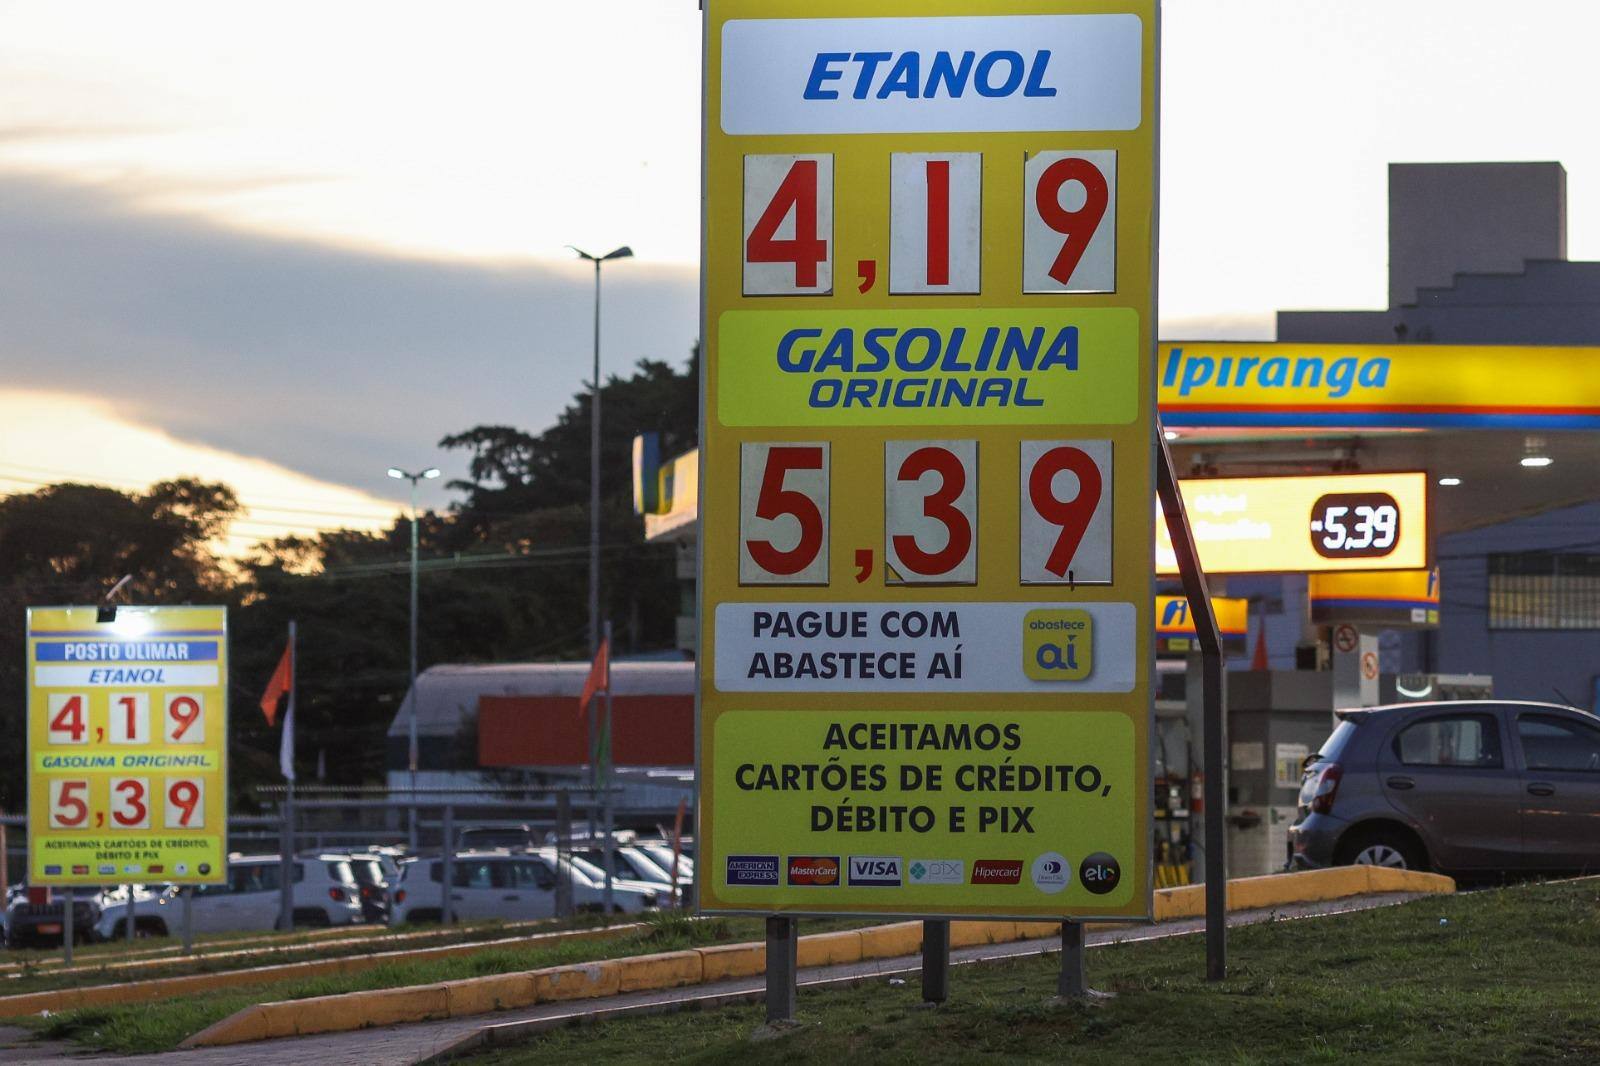 Placa indica que litro da gasolina está custando R$ 5,39, enquanto o etanol sai por R$ 4,19